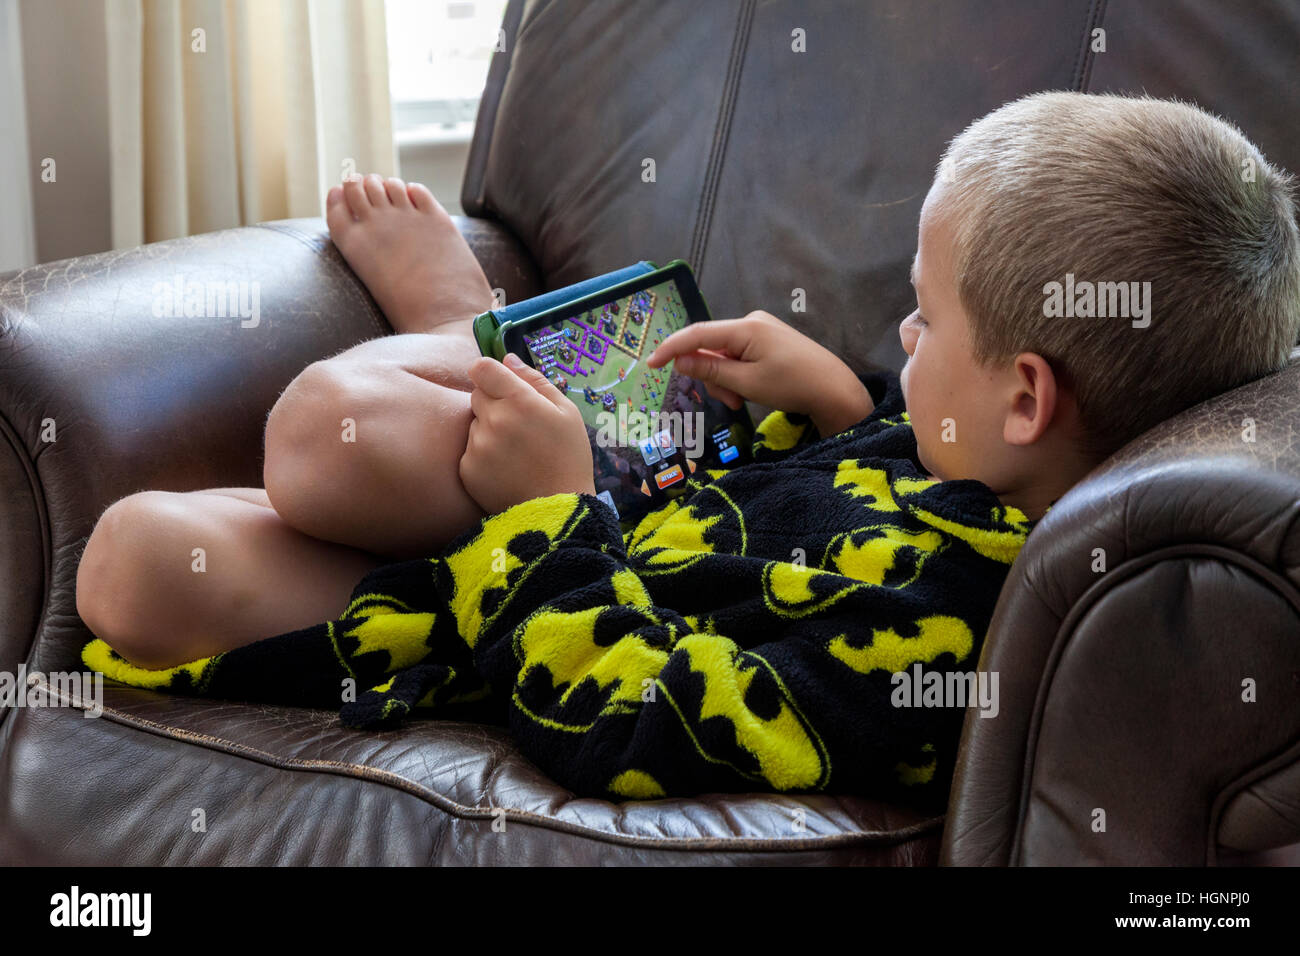 Seven-Year-Old Boy Spiel auf dem iPad. Stockfoto